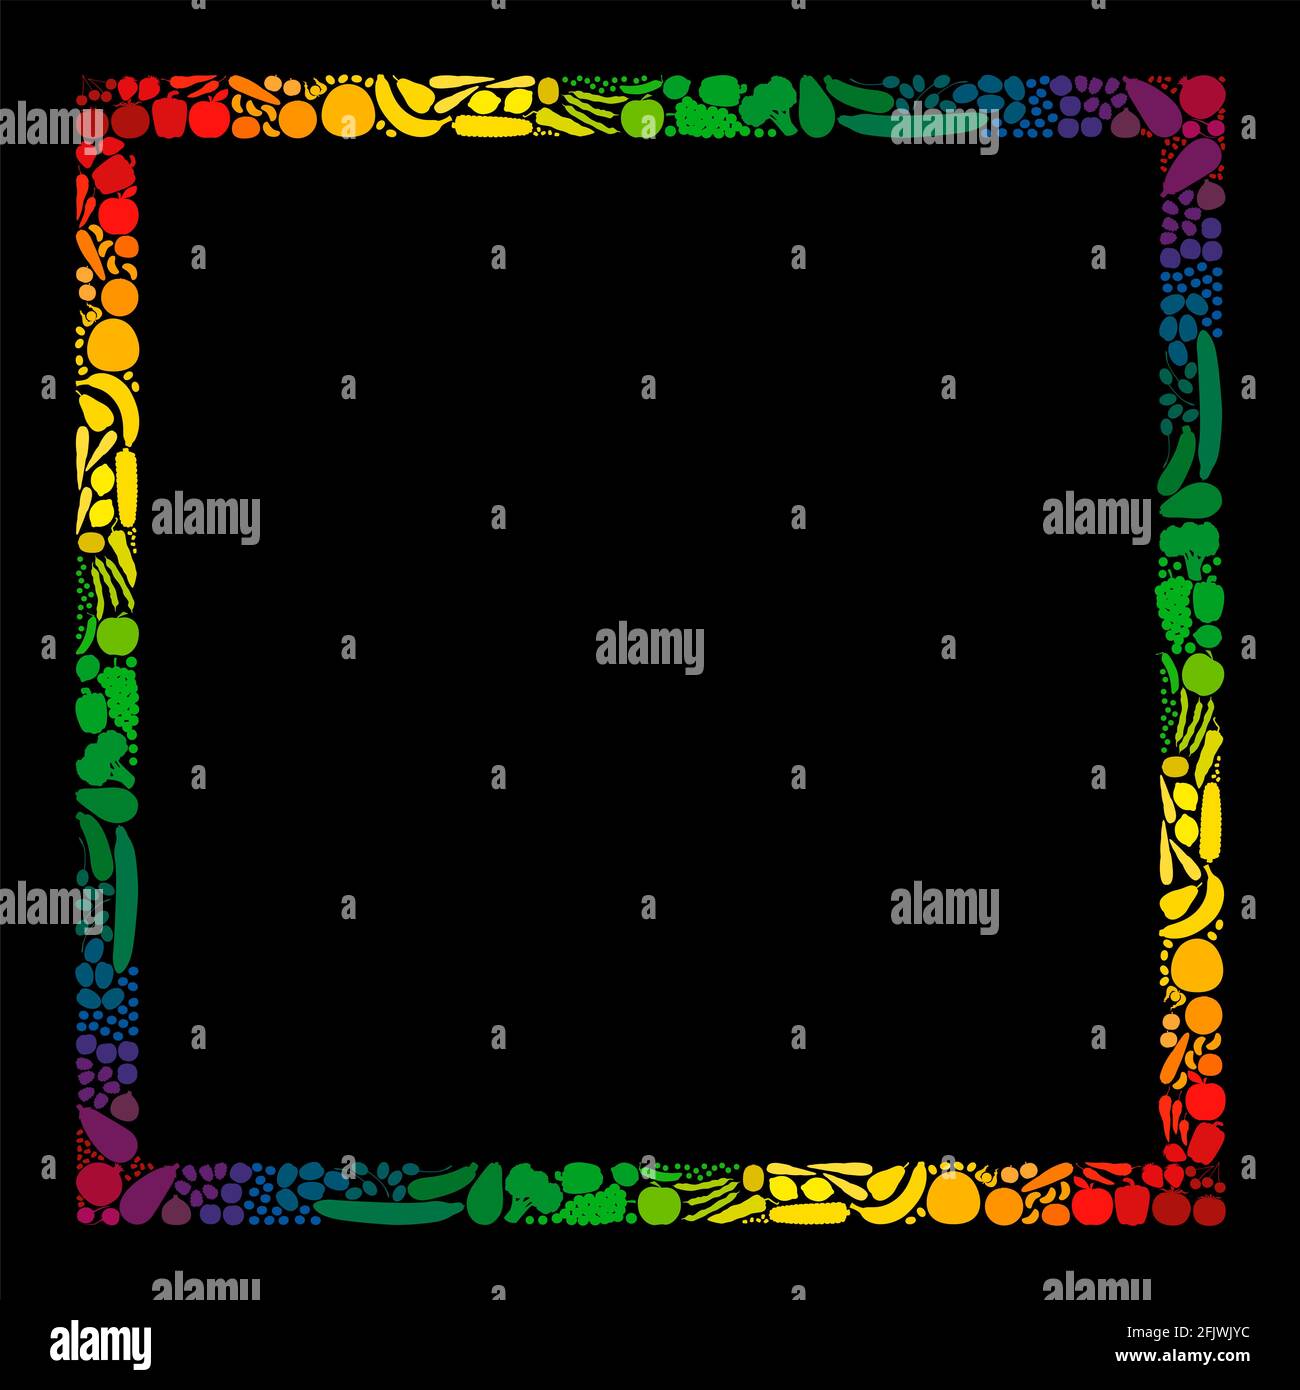 Gemüse- und Obstrahmen, quadratisches Format, regenbogenfarbene Streifen -Illustration auf schwarzem Hintergrund. Stockfoto